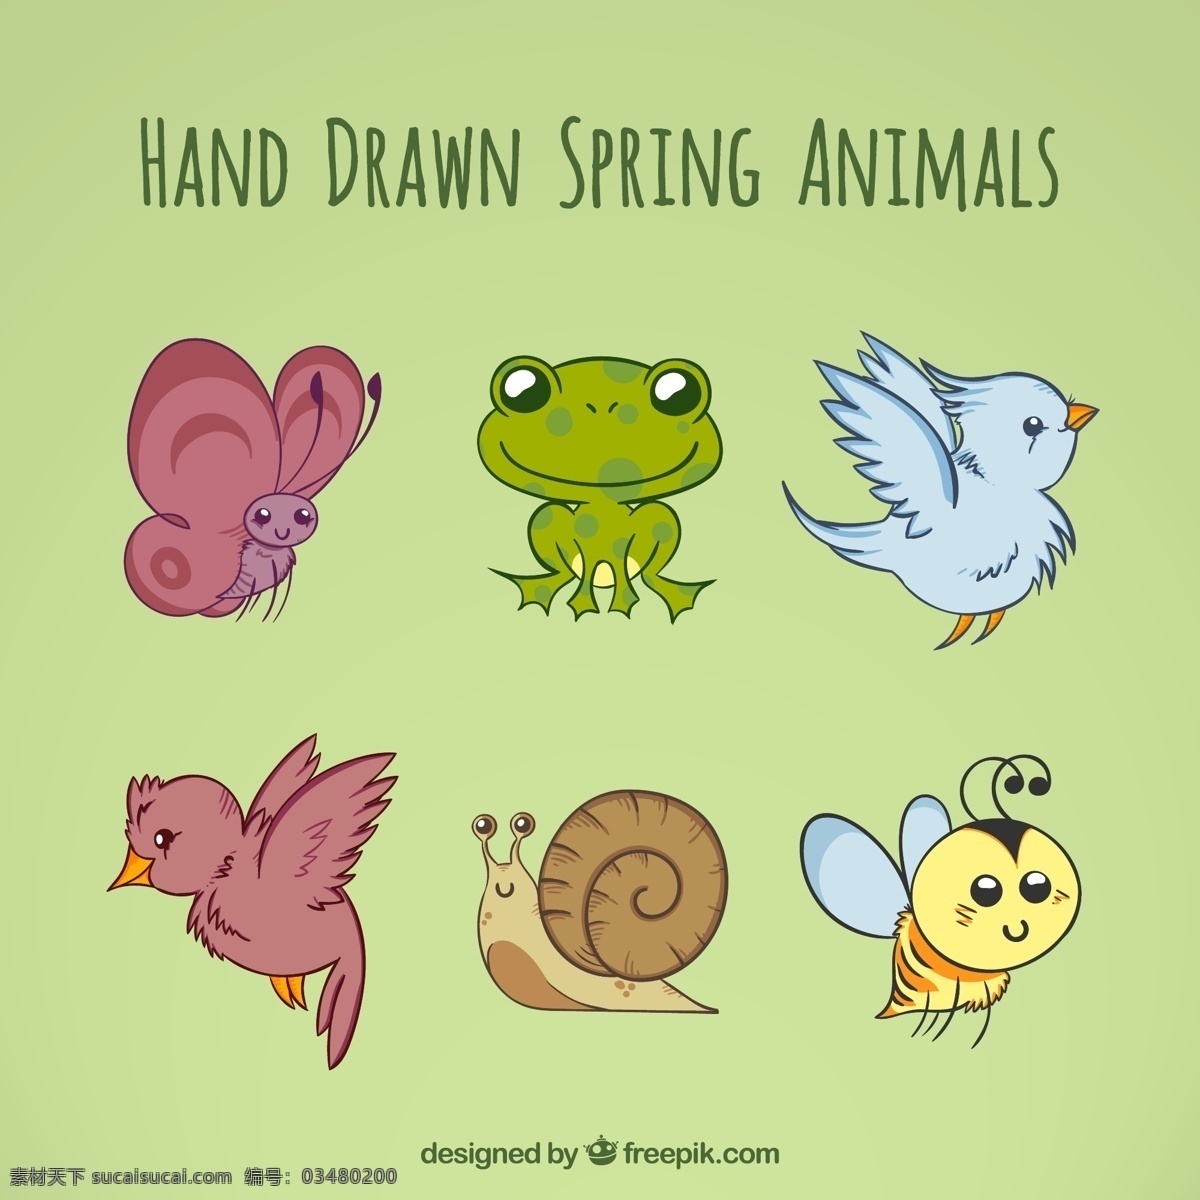 手绘自然动物 蝴蝶 自然 动物 春天 绘制 可爱 蜜蜂 绘图 搞笑 青蛙 蜗牛 抽纱 野生 尼斯 素描